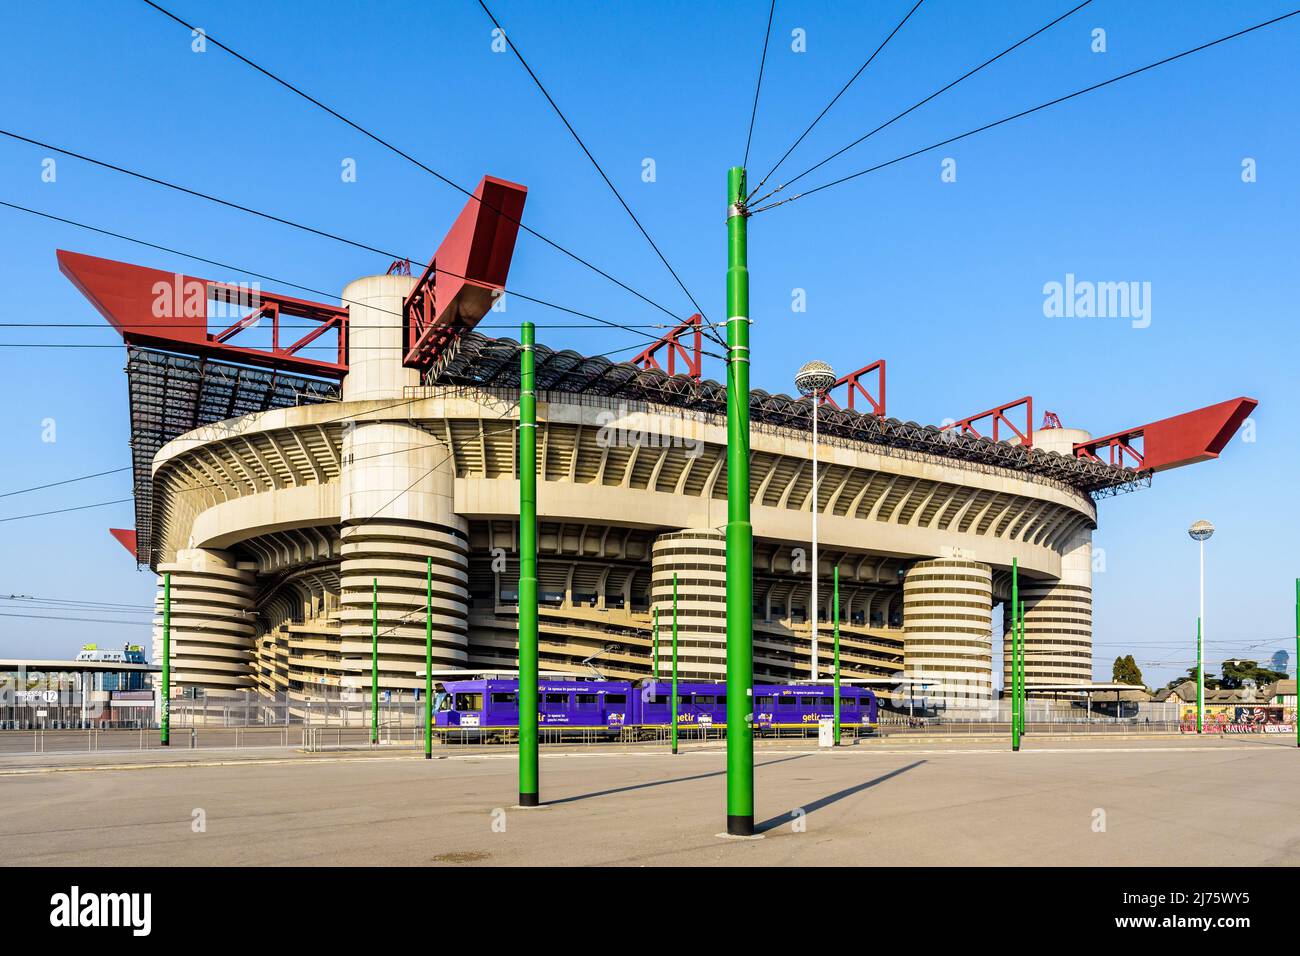 Vista general del estadio de fútbol de San Siro, estadio de los clubes de fútbol Inter de Milán y AC Milán en Milán, Italia. Foto de stock